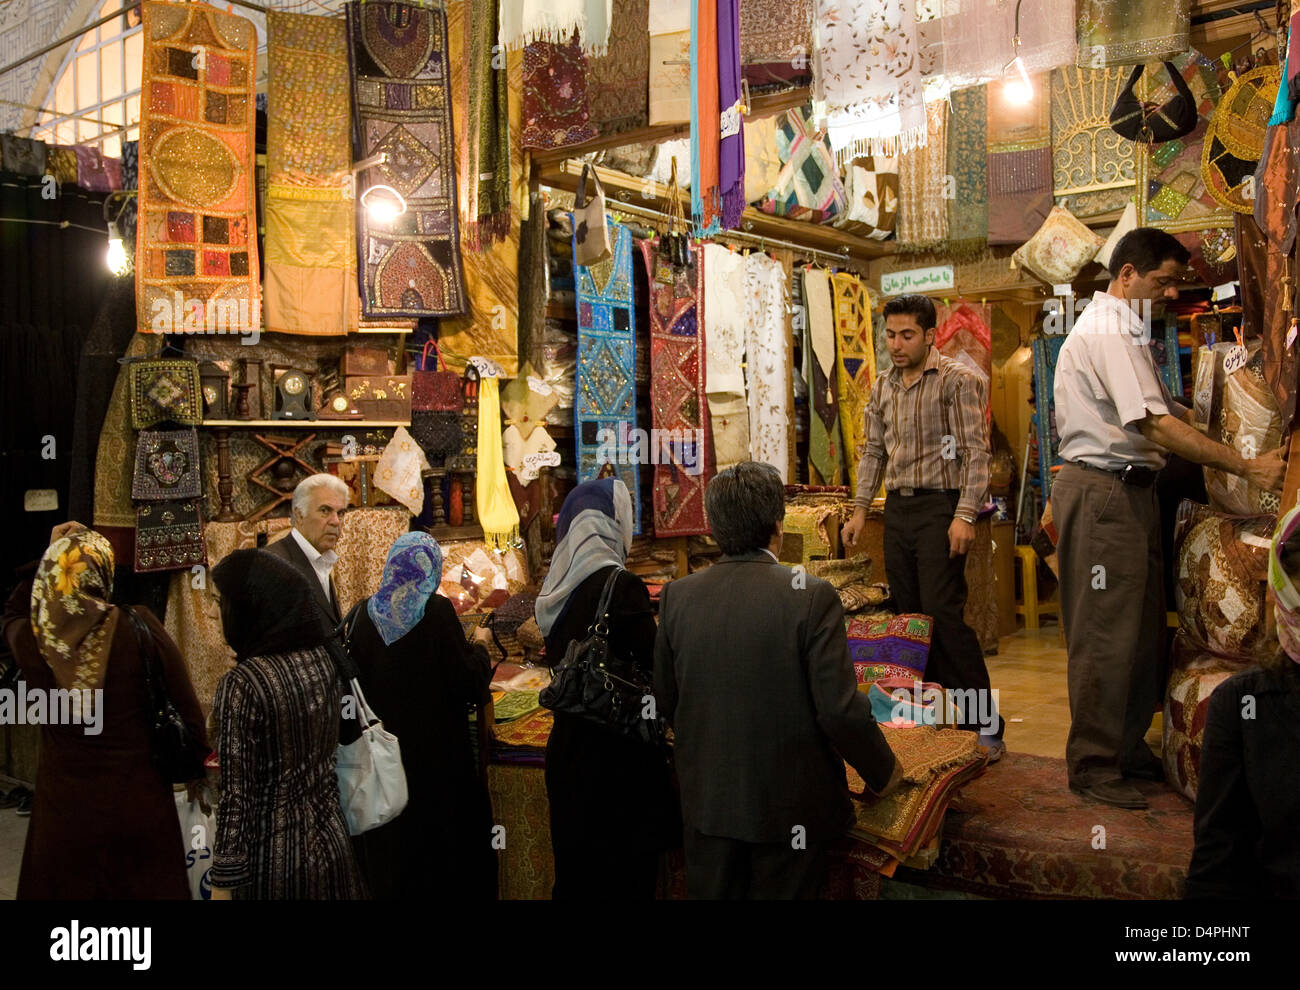 Kunden kaufen ein Tuchmacher in Shiraz, Iran, im März 2009. mit 1,6 Millionen Einwohnern zählt Shiraz zu Iran? s Großstädten und zieht Tausende von Touristen pro Jahr vor allem für Persepolis, UNESCO World Heritage Site einige 60 Kilometer ausserhalb von Shiraz. Foto: Boris Roessler Stockfoto